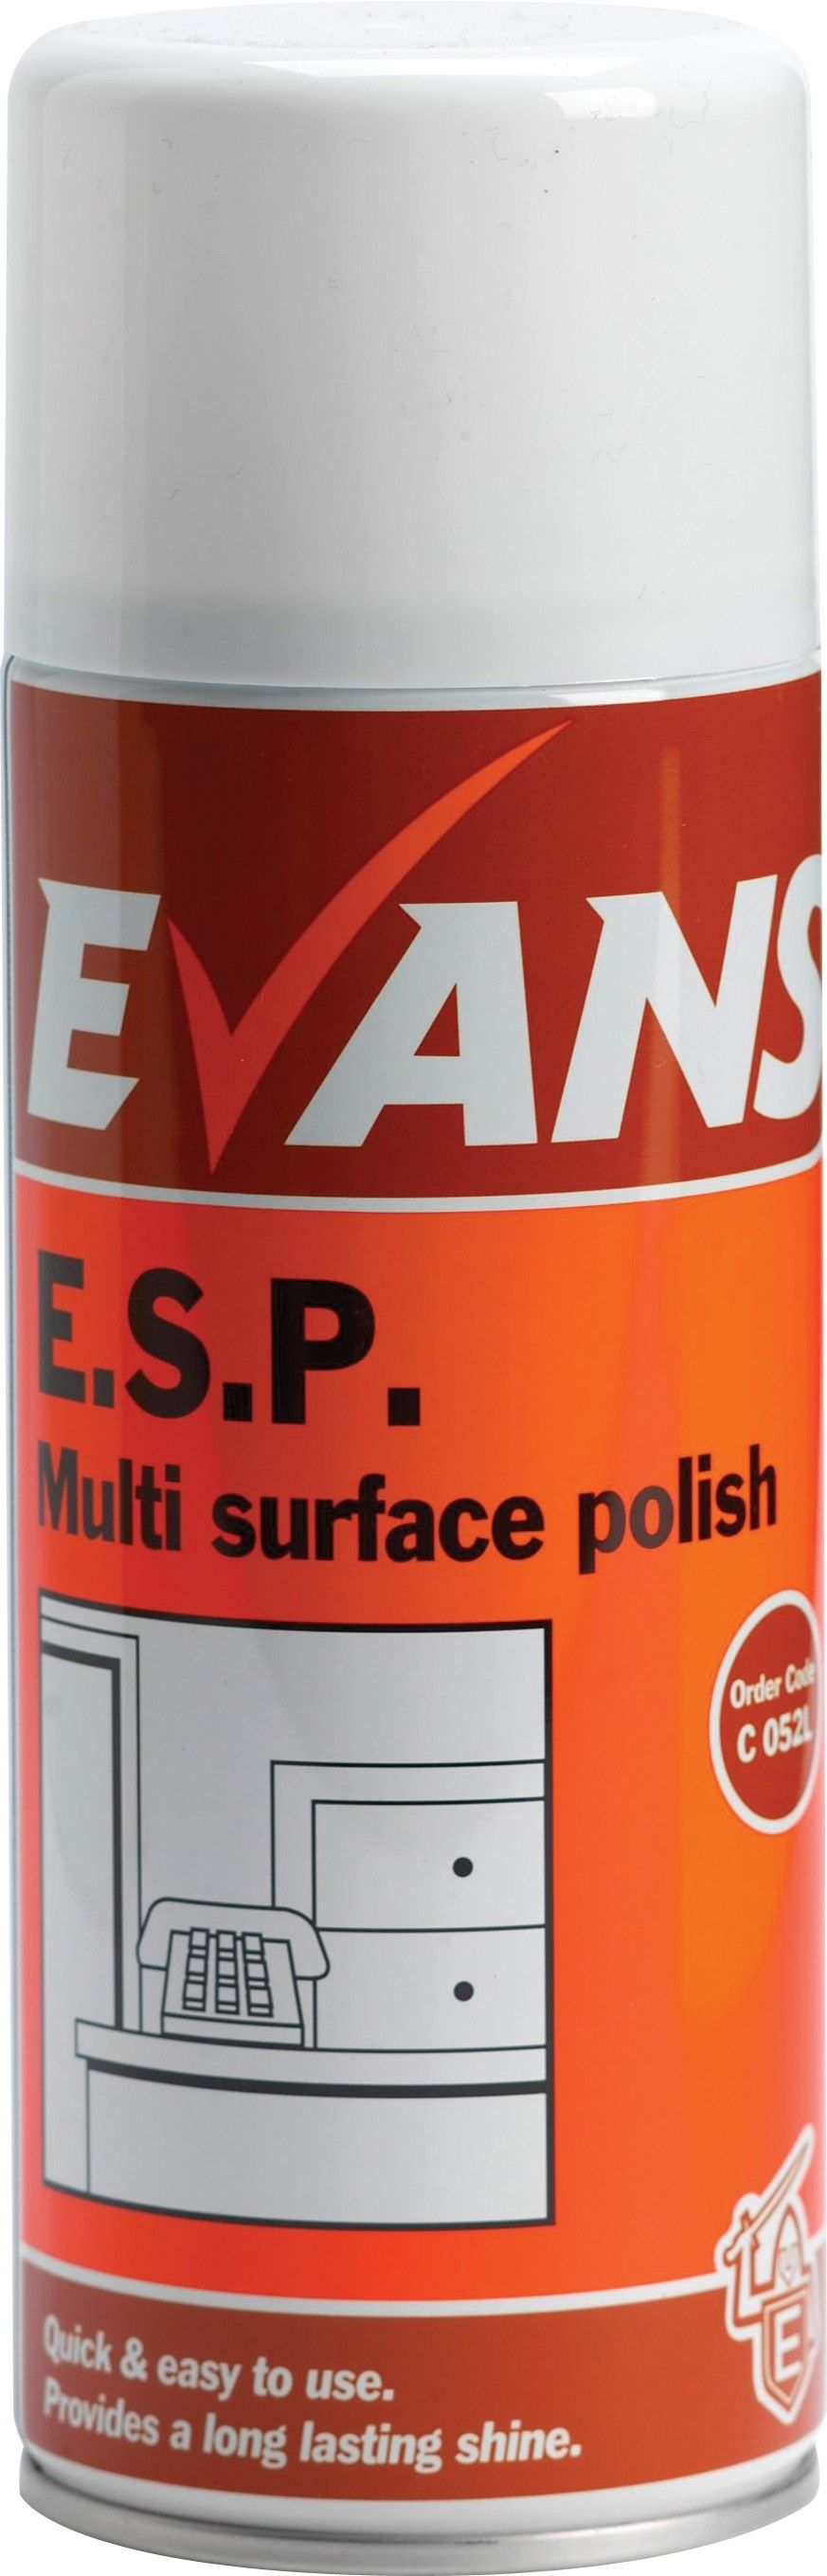 Evans E.S.P Spray Cleaner & Polish 400ml 